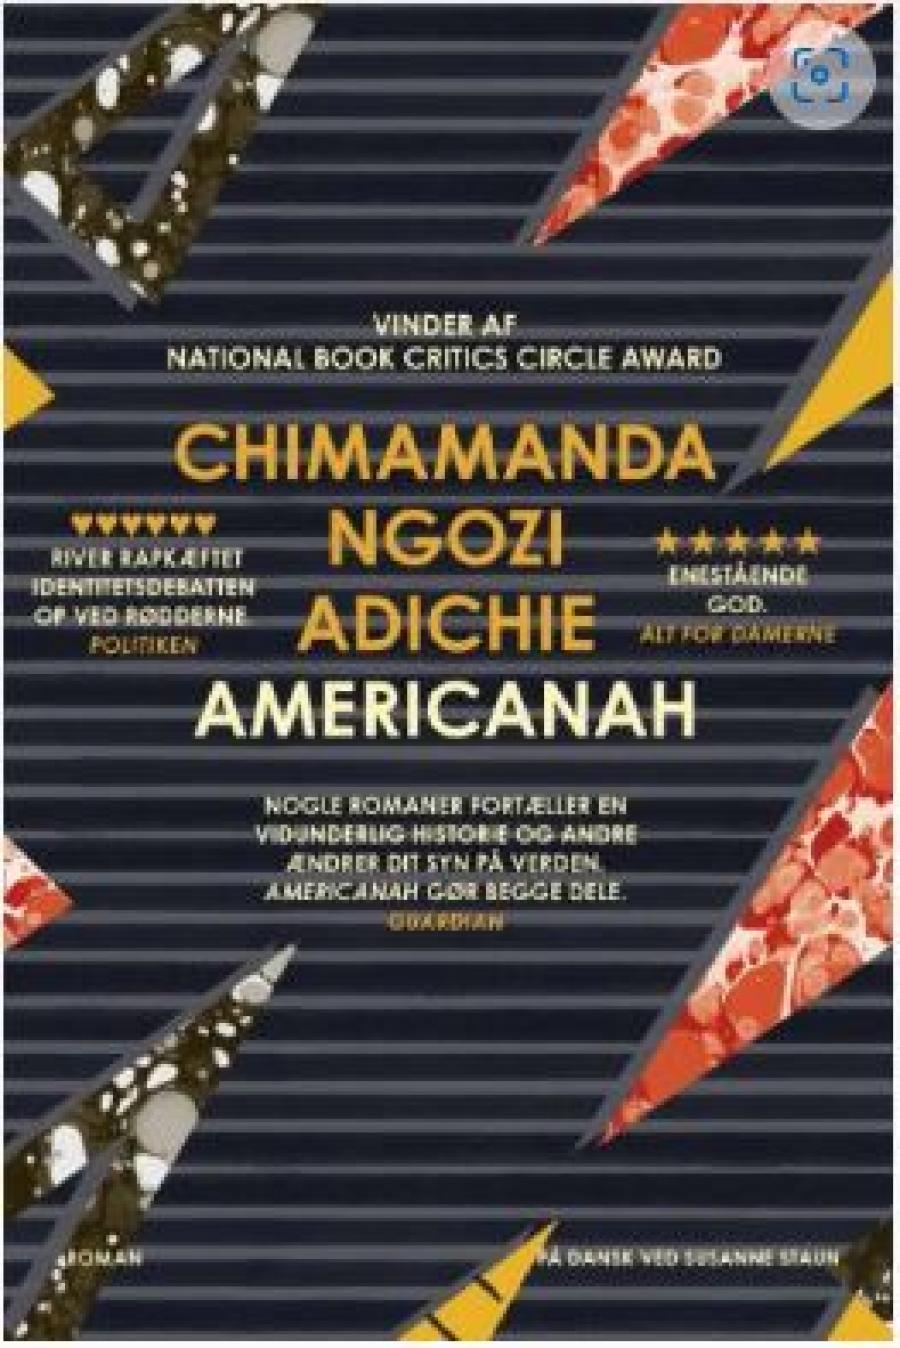 Chimamanda Ngozi Adichie, "Americanah"